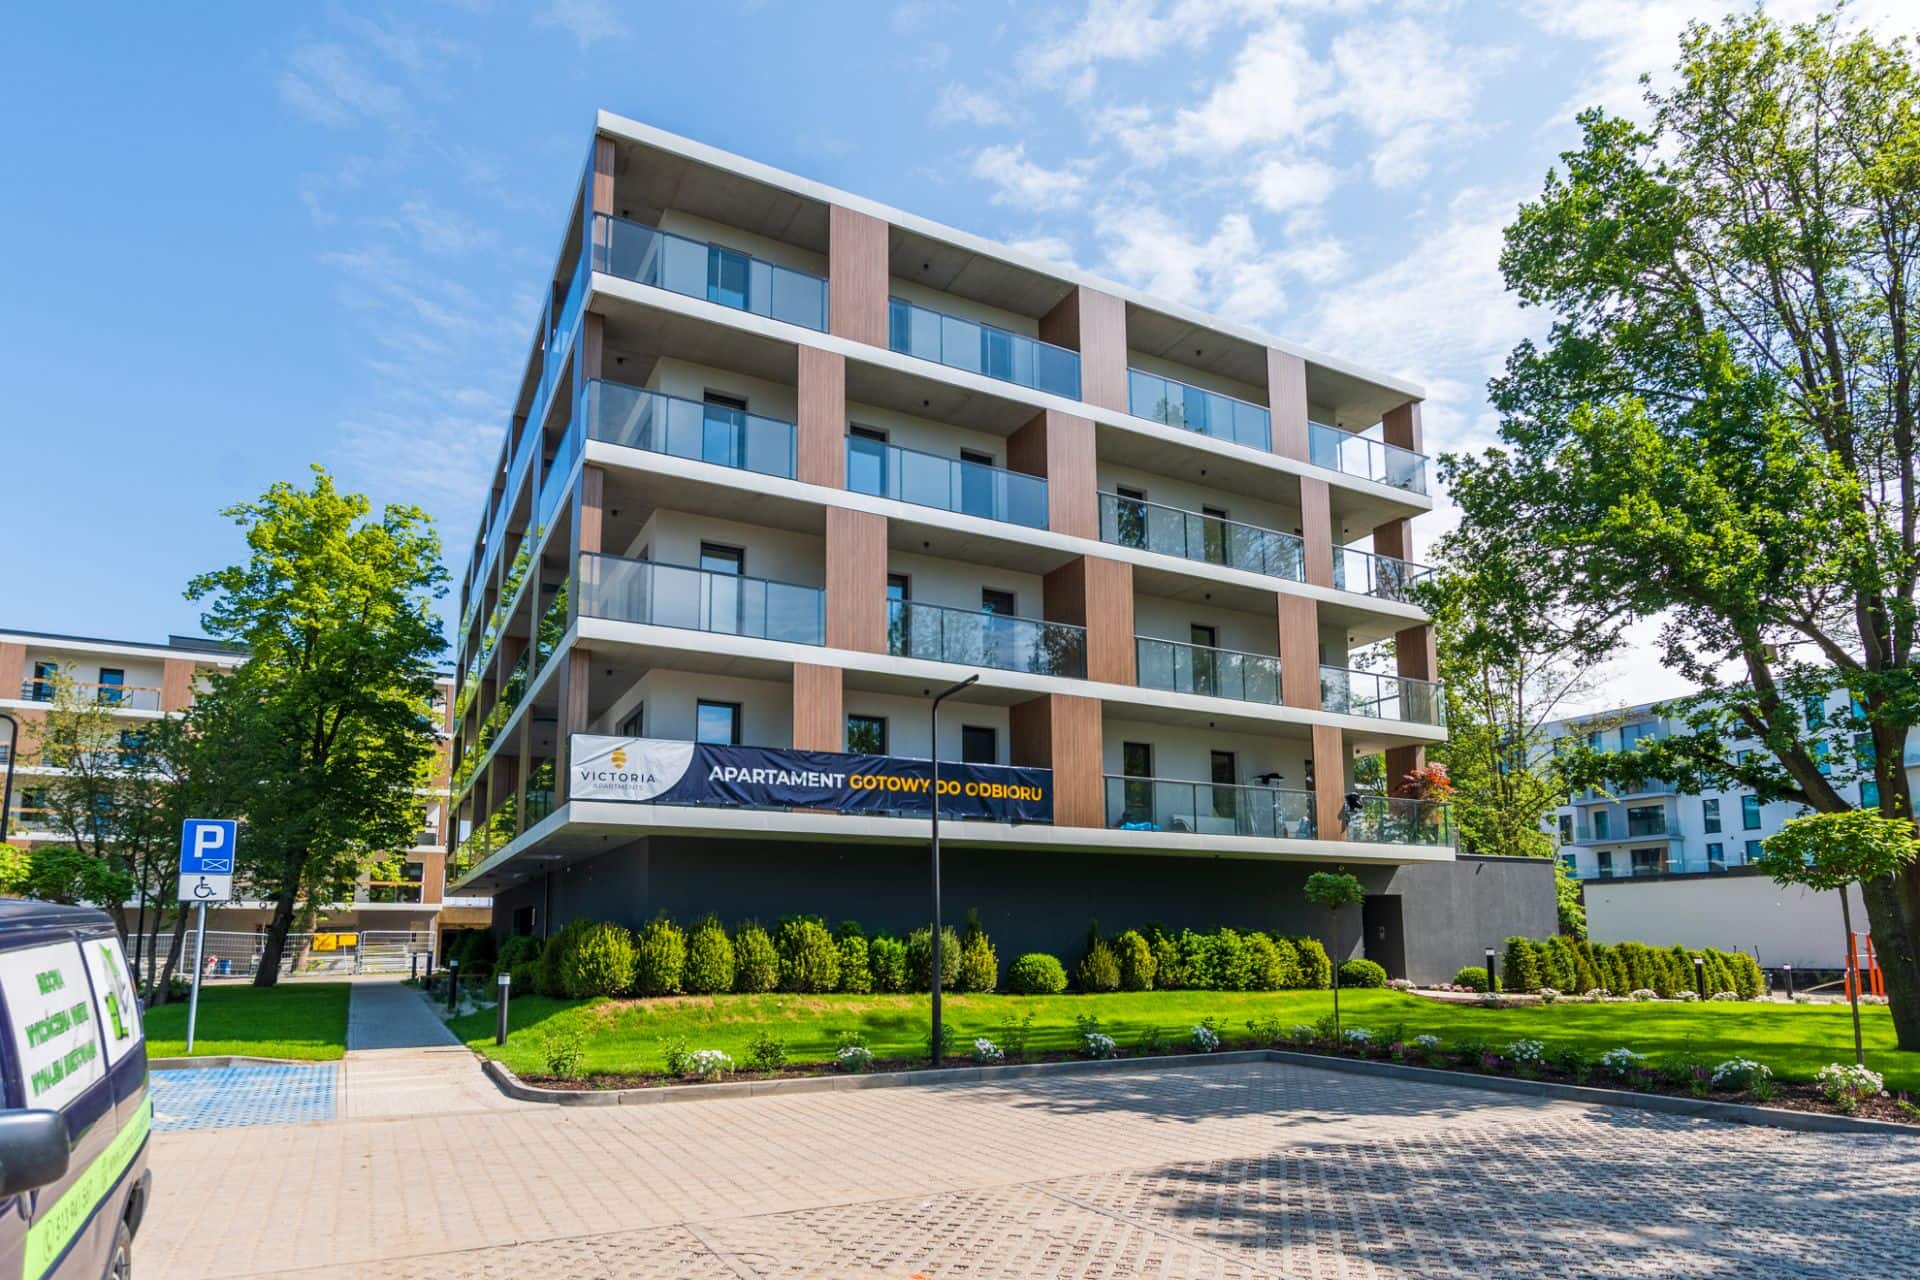 Victoria, Osiedle Victoria Apartments w Szczecinie - PCG